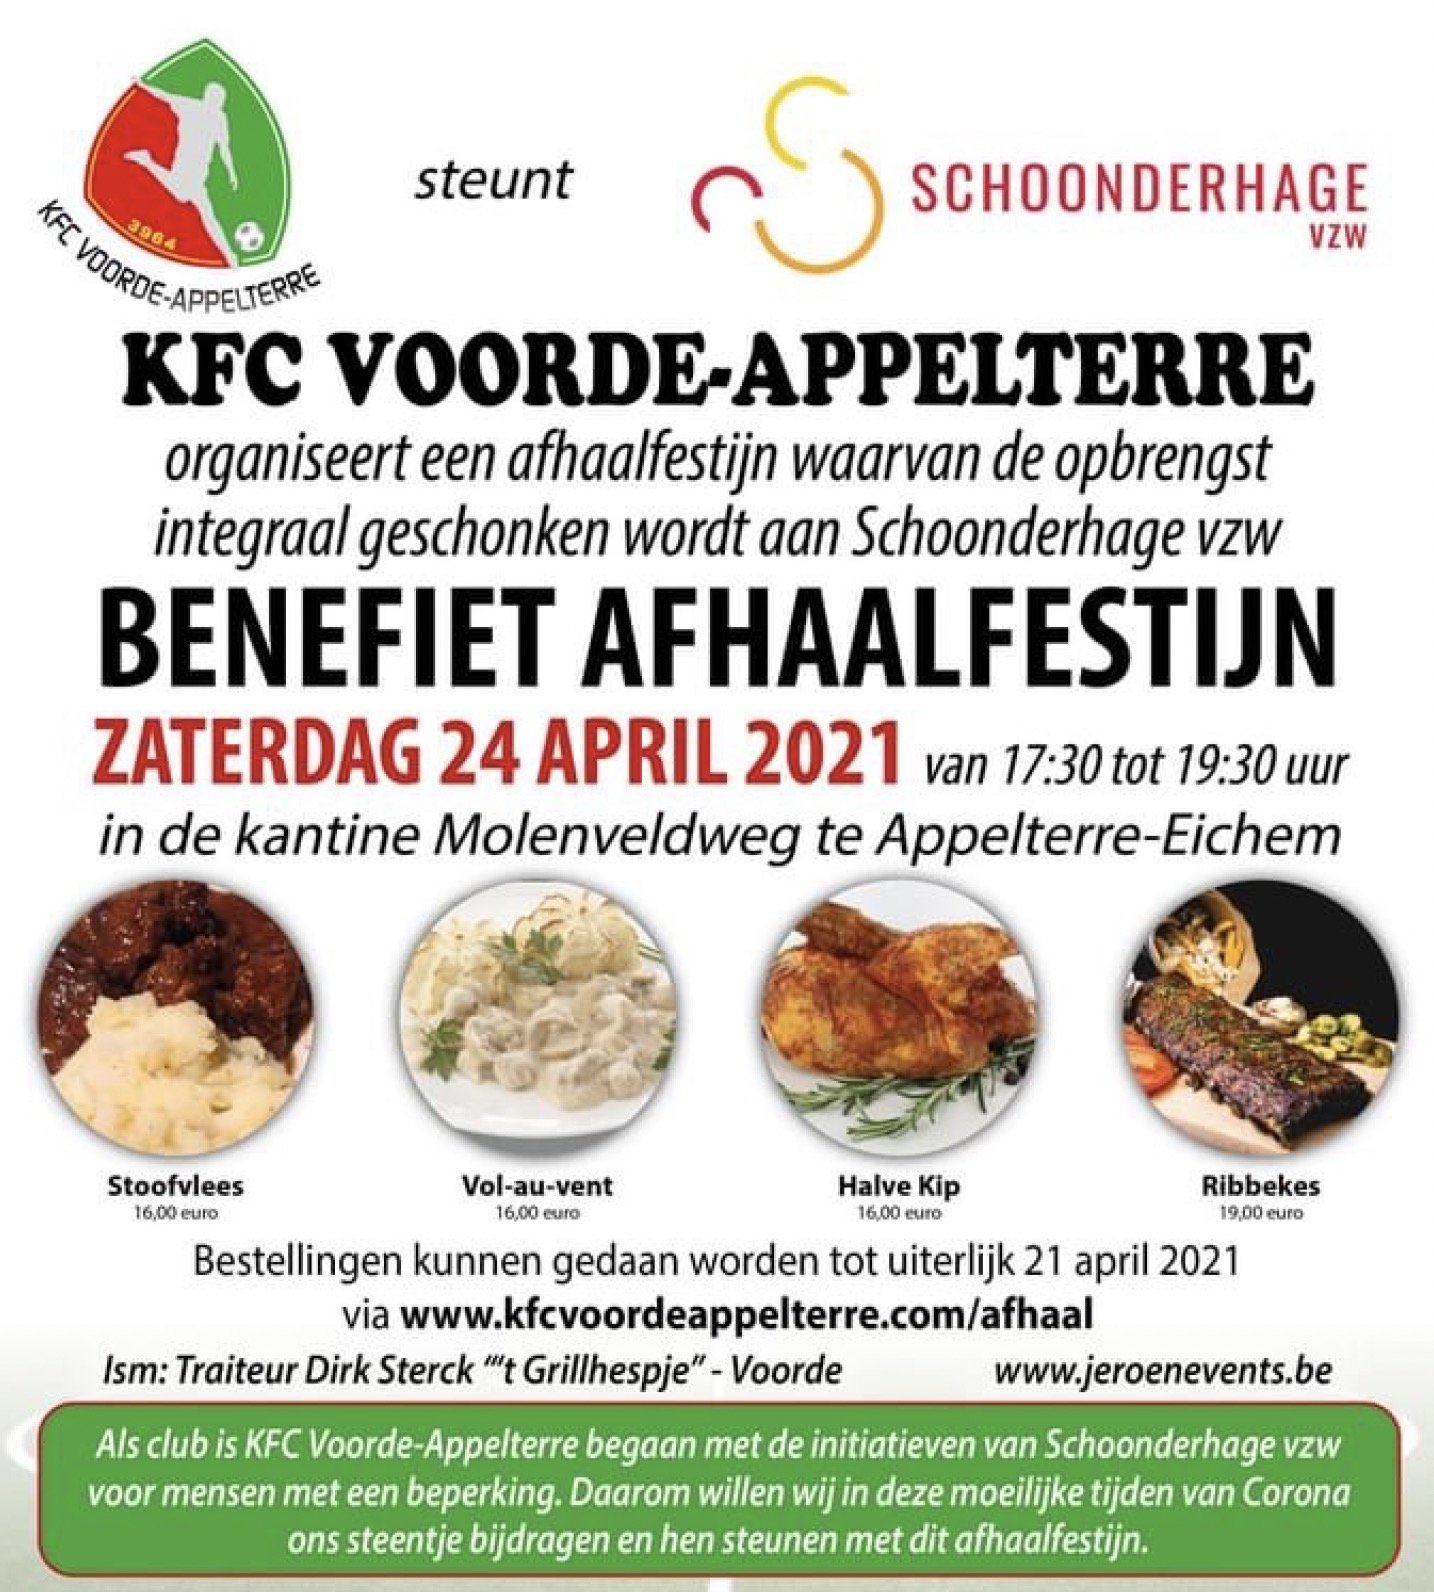 KFC Voorde-Appelterre: “Samen lokaal voor het goede doel”